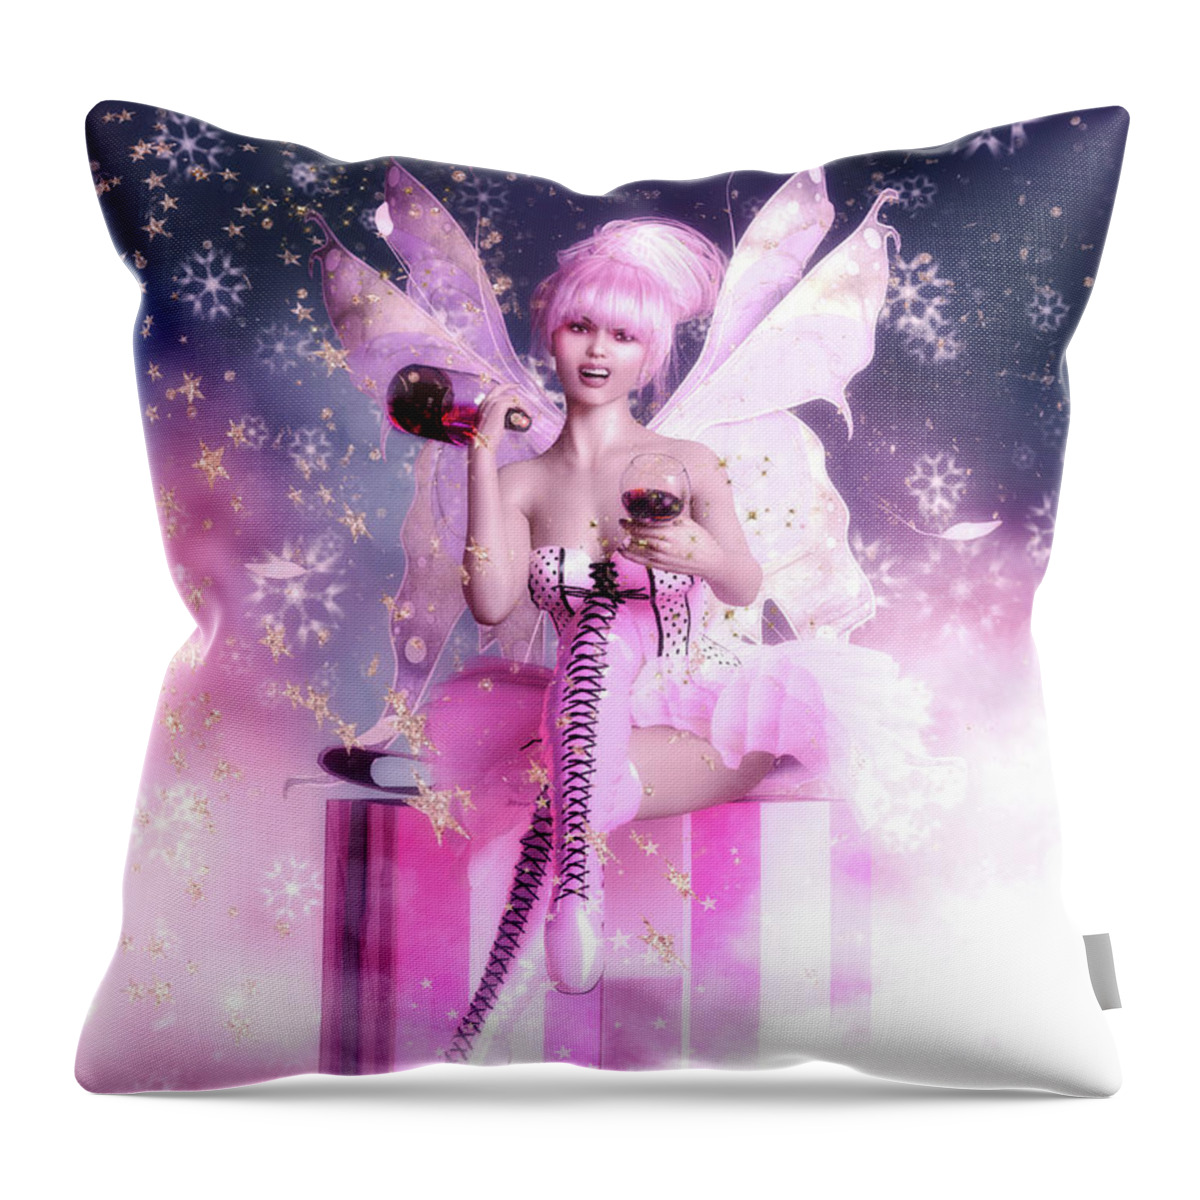 Sugar Plum Fairy Throw Pillow featuring the digital art Sugar Plum Fairy by Shanina Conway